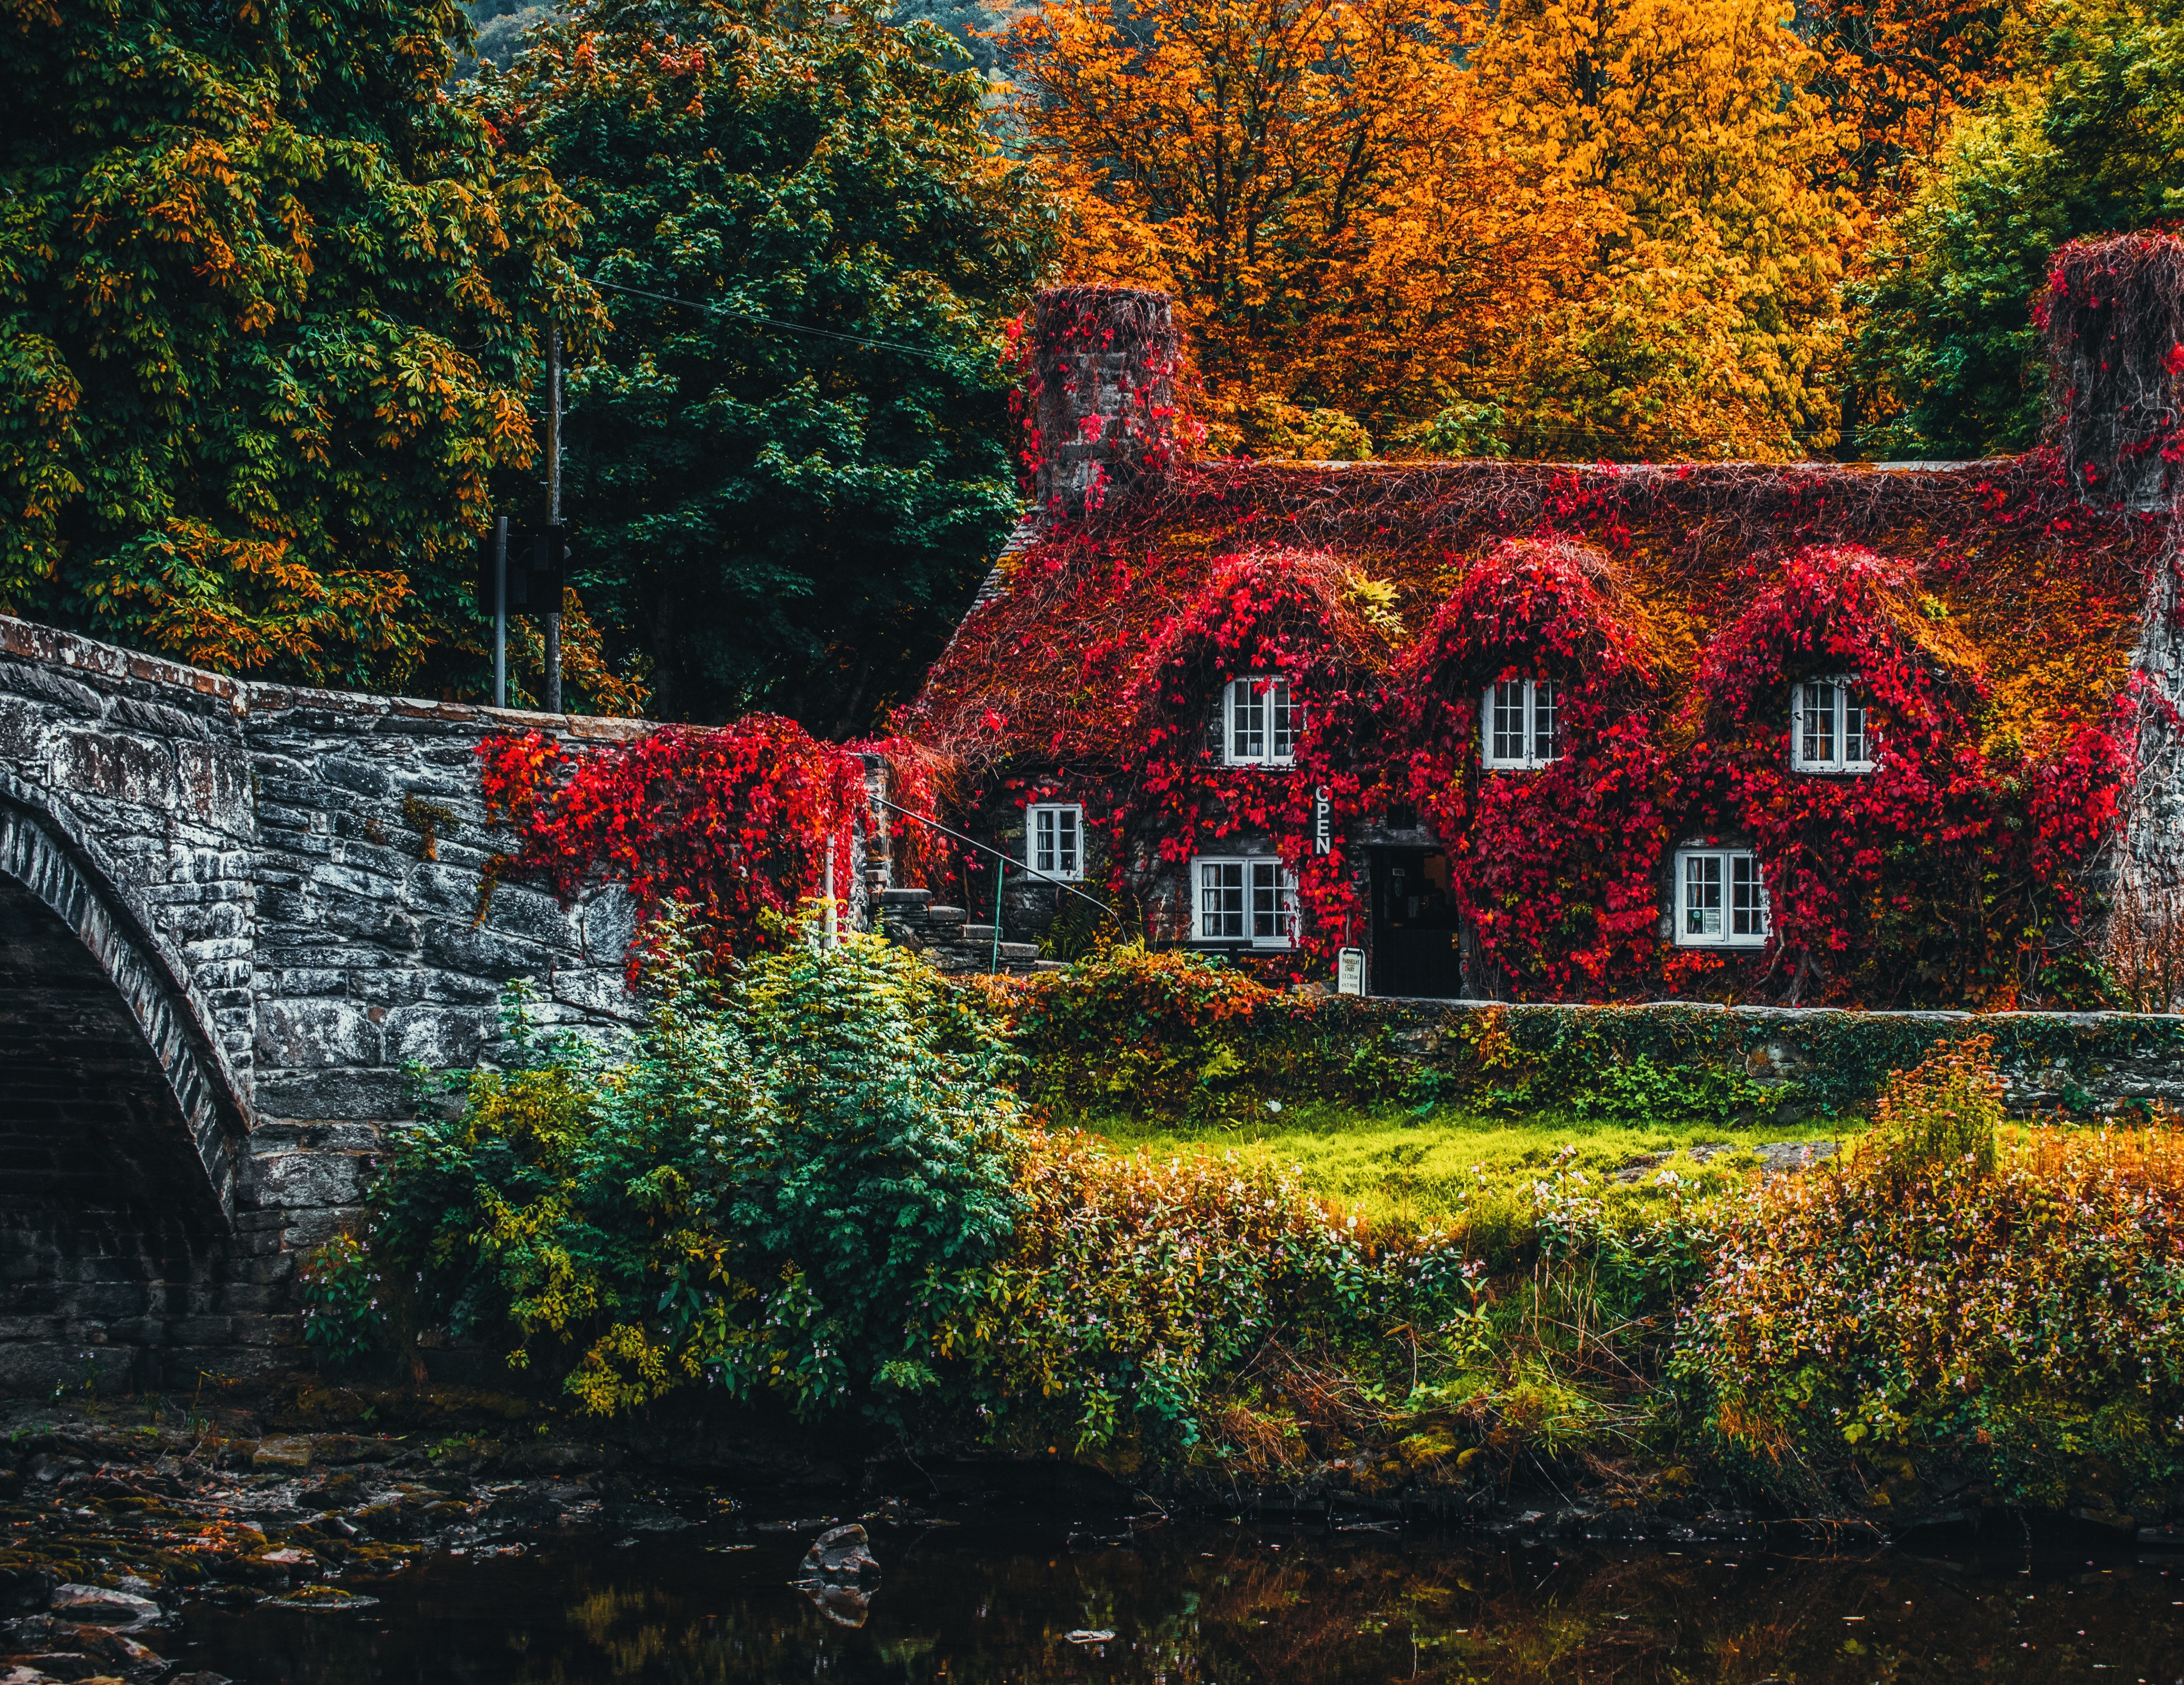 small house, rivers, autumn colors, autumn, nature, autumn paints, lodge, foliage